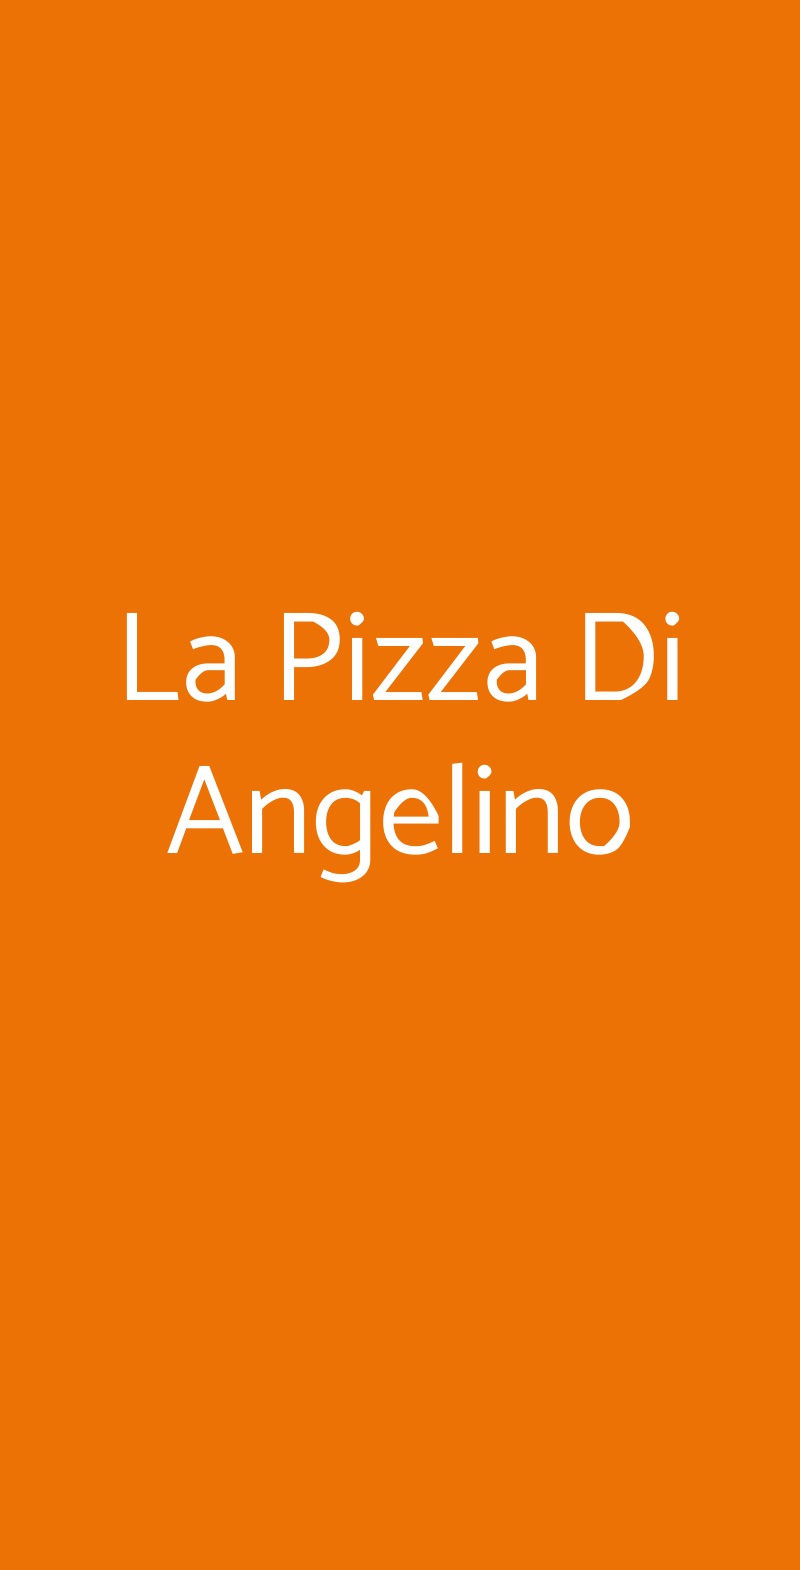 La Pizza Di Angelino Roma menù 1 pagina